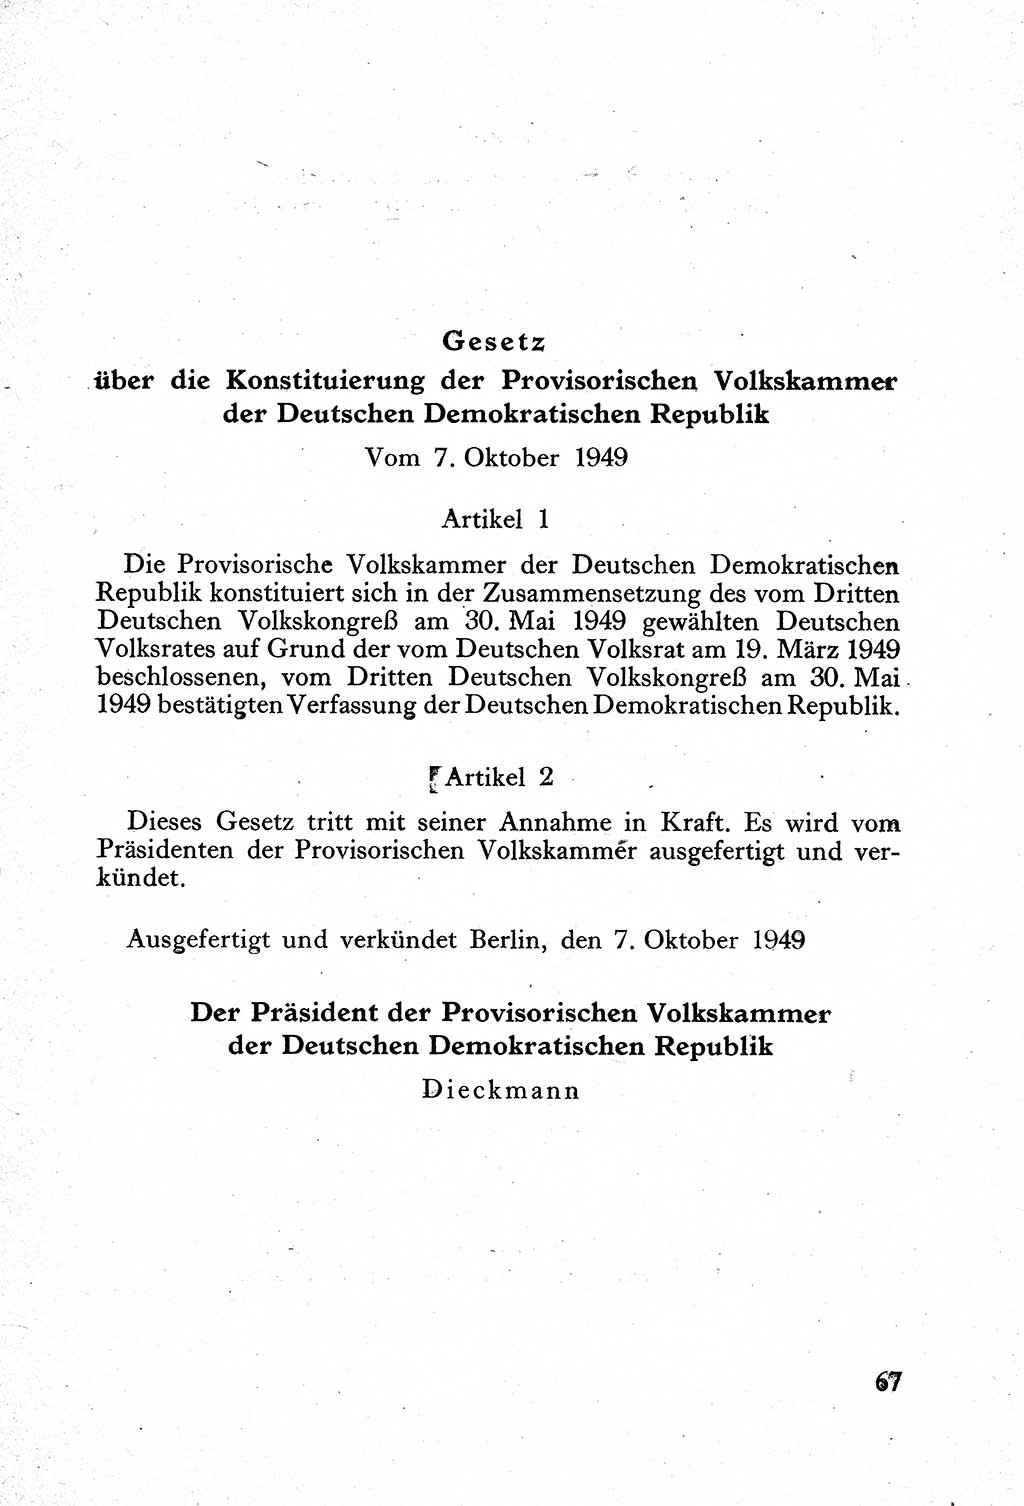 Verfassung der Deutschen Demokratischen Republik (DDR) mit einer Einleitung von Karl Steinhoff 1949, Seite 67 (Verf. DDR Einl. K. S. 1949, S. 67)